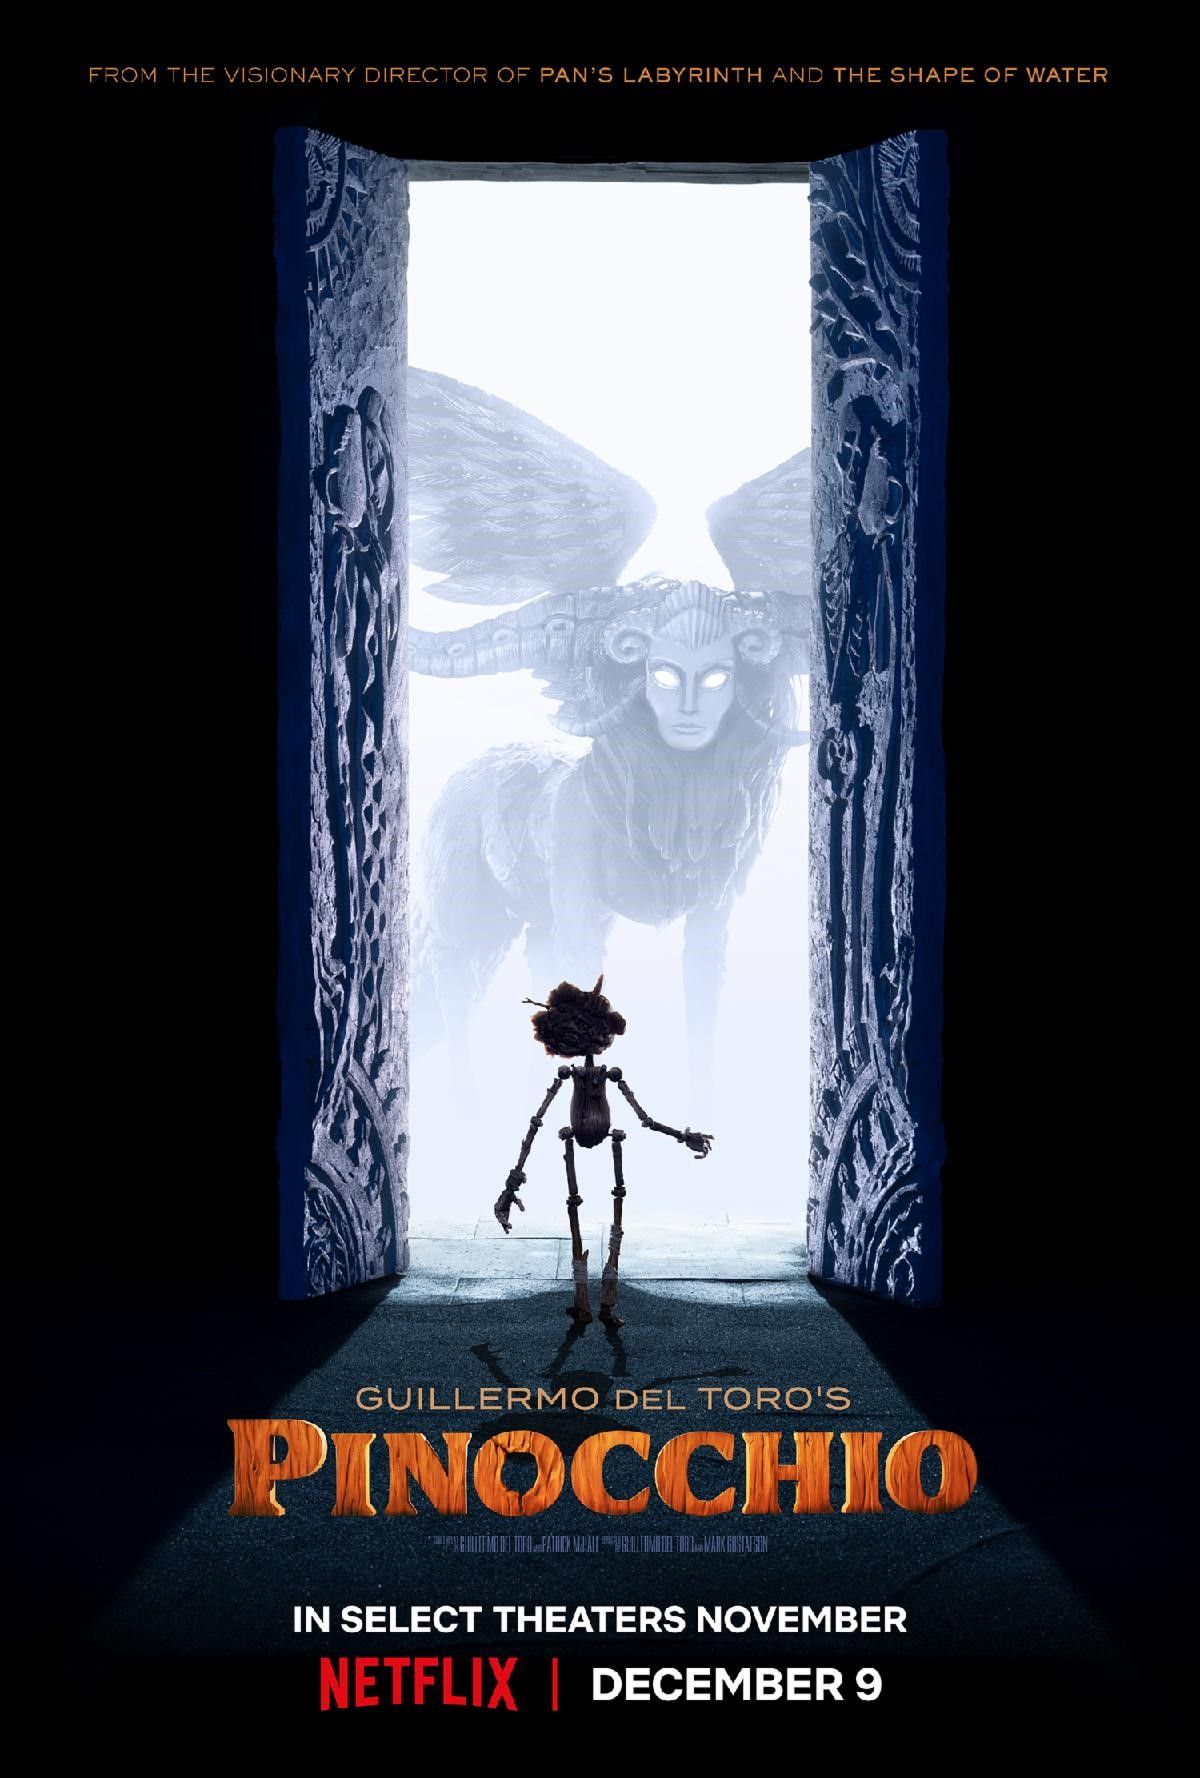 Guillermo del Toros Pinocchio Film Poster